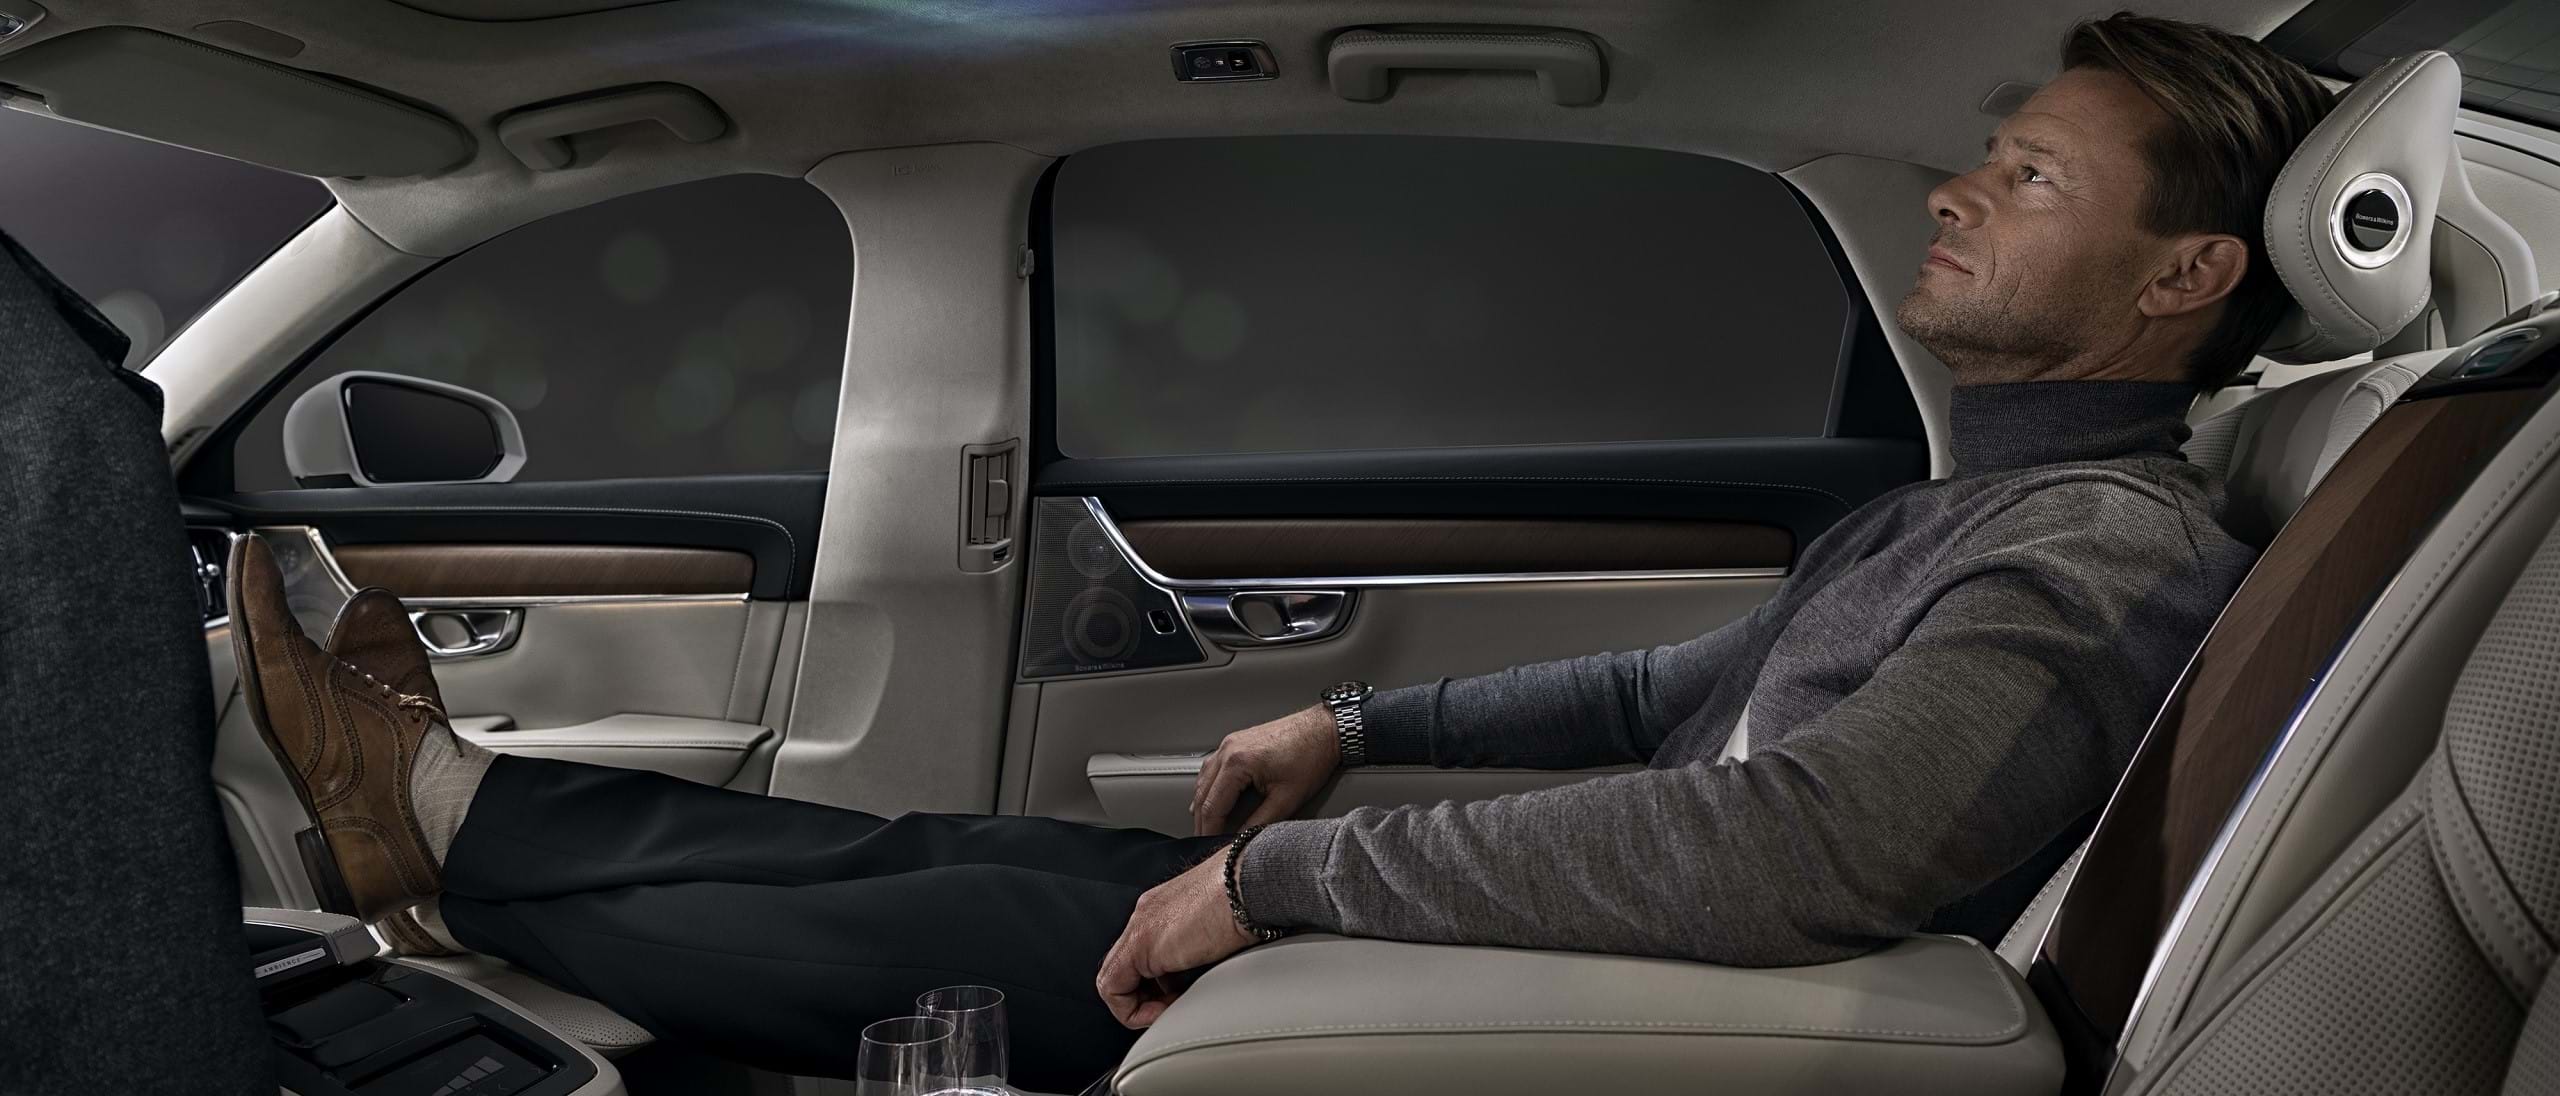 Homme allongé sur un siège arrière d'une Volvo profitant de son ambiance intérieure.